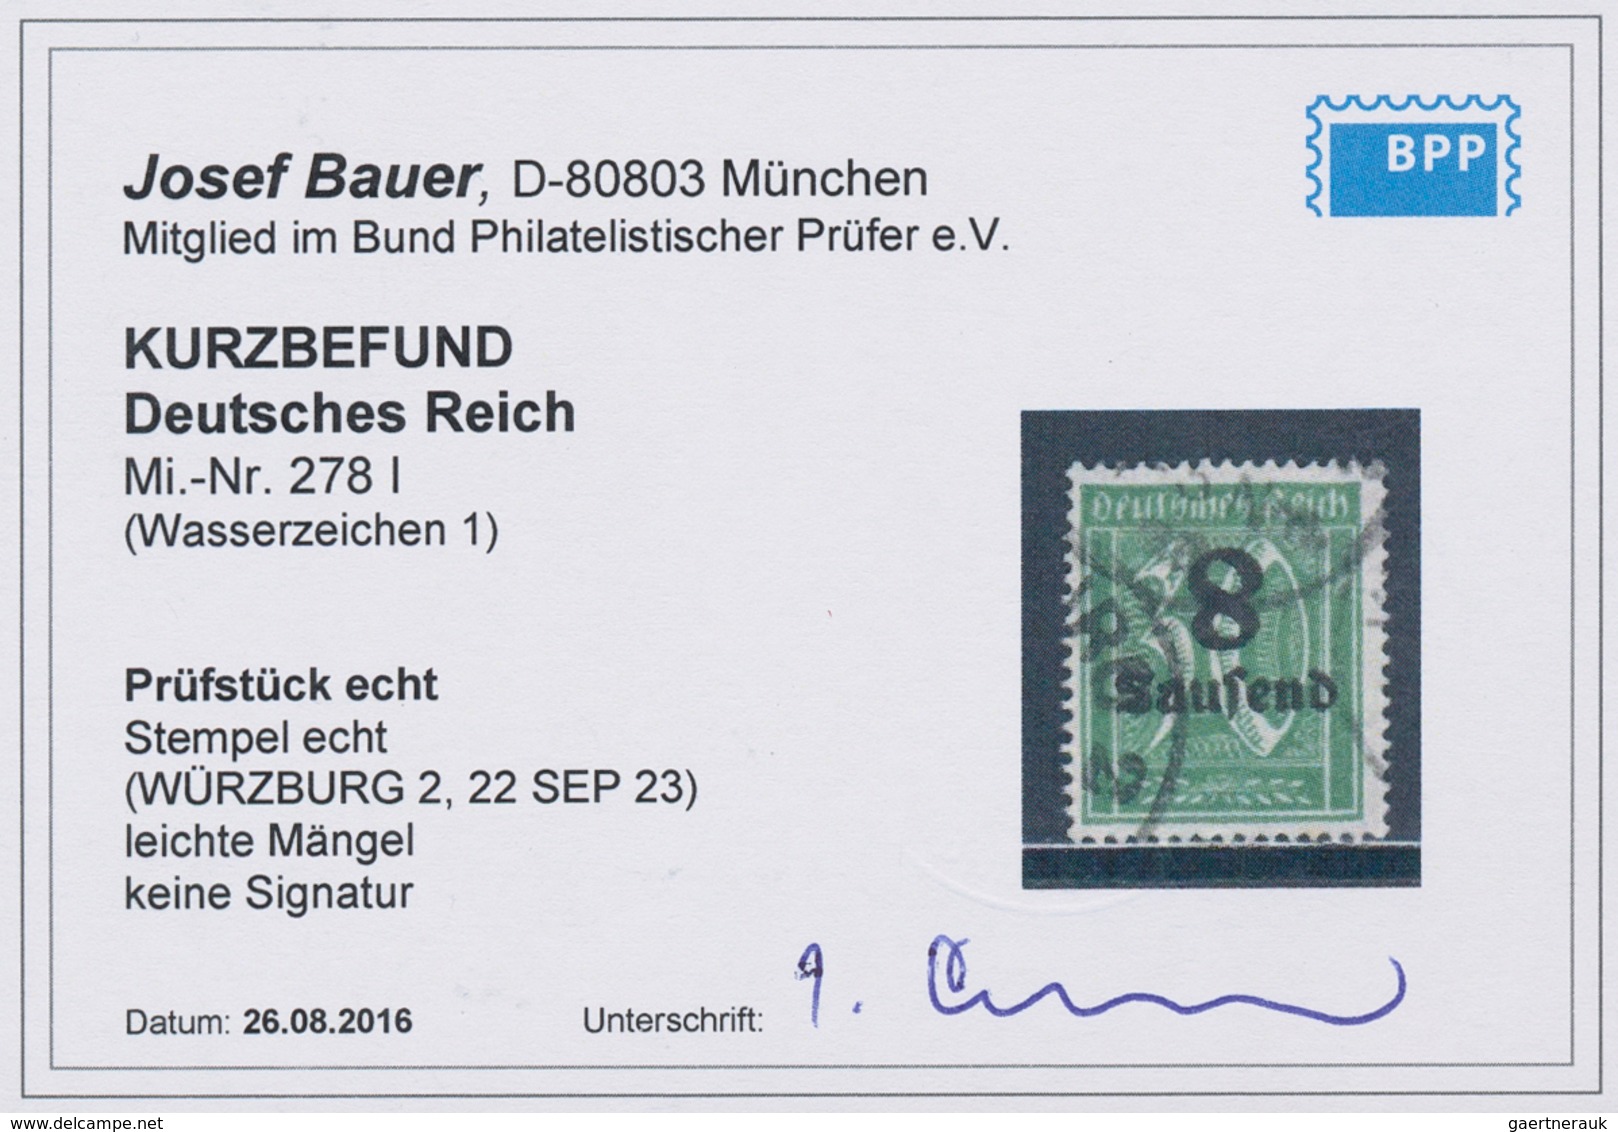 18008 Deutsches Reich - Inflation: 1923, Freimarke: Ziffer Im Rechteck 8 Tsd Auf 30 Pf Opalgrün Mit Wasser - Covers & Documents